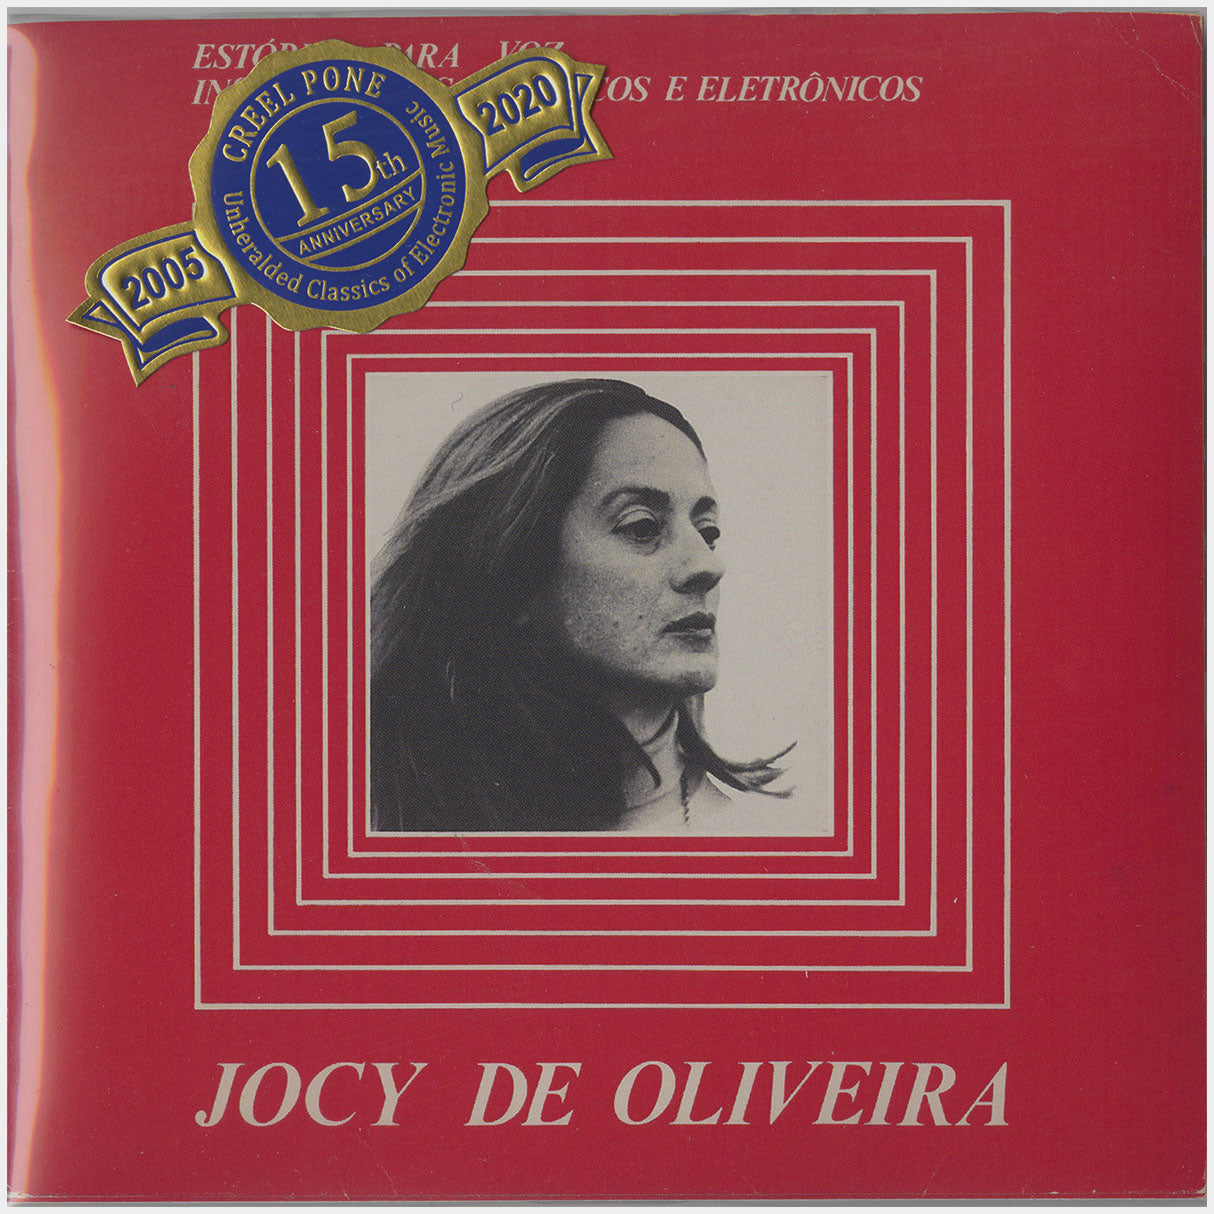 [CP 032 CD] Jocy De Oliveira; Estórias Para Voz Instrumentos Acústicos E Eletrônicos, New Music Circles +